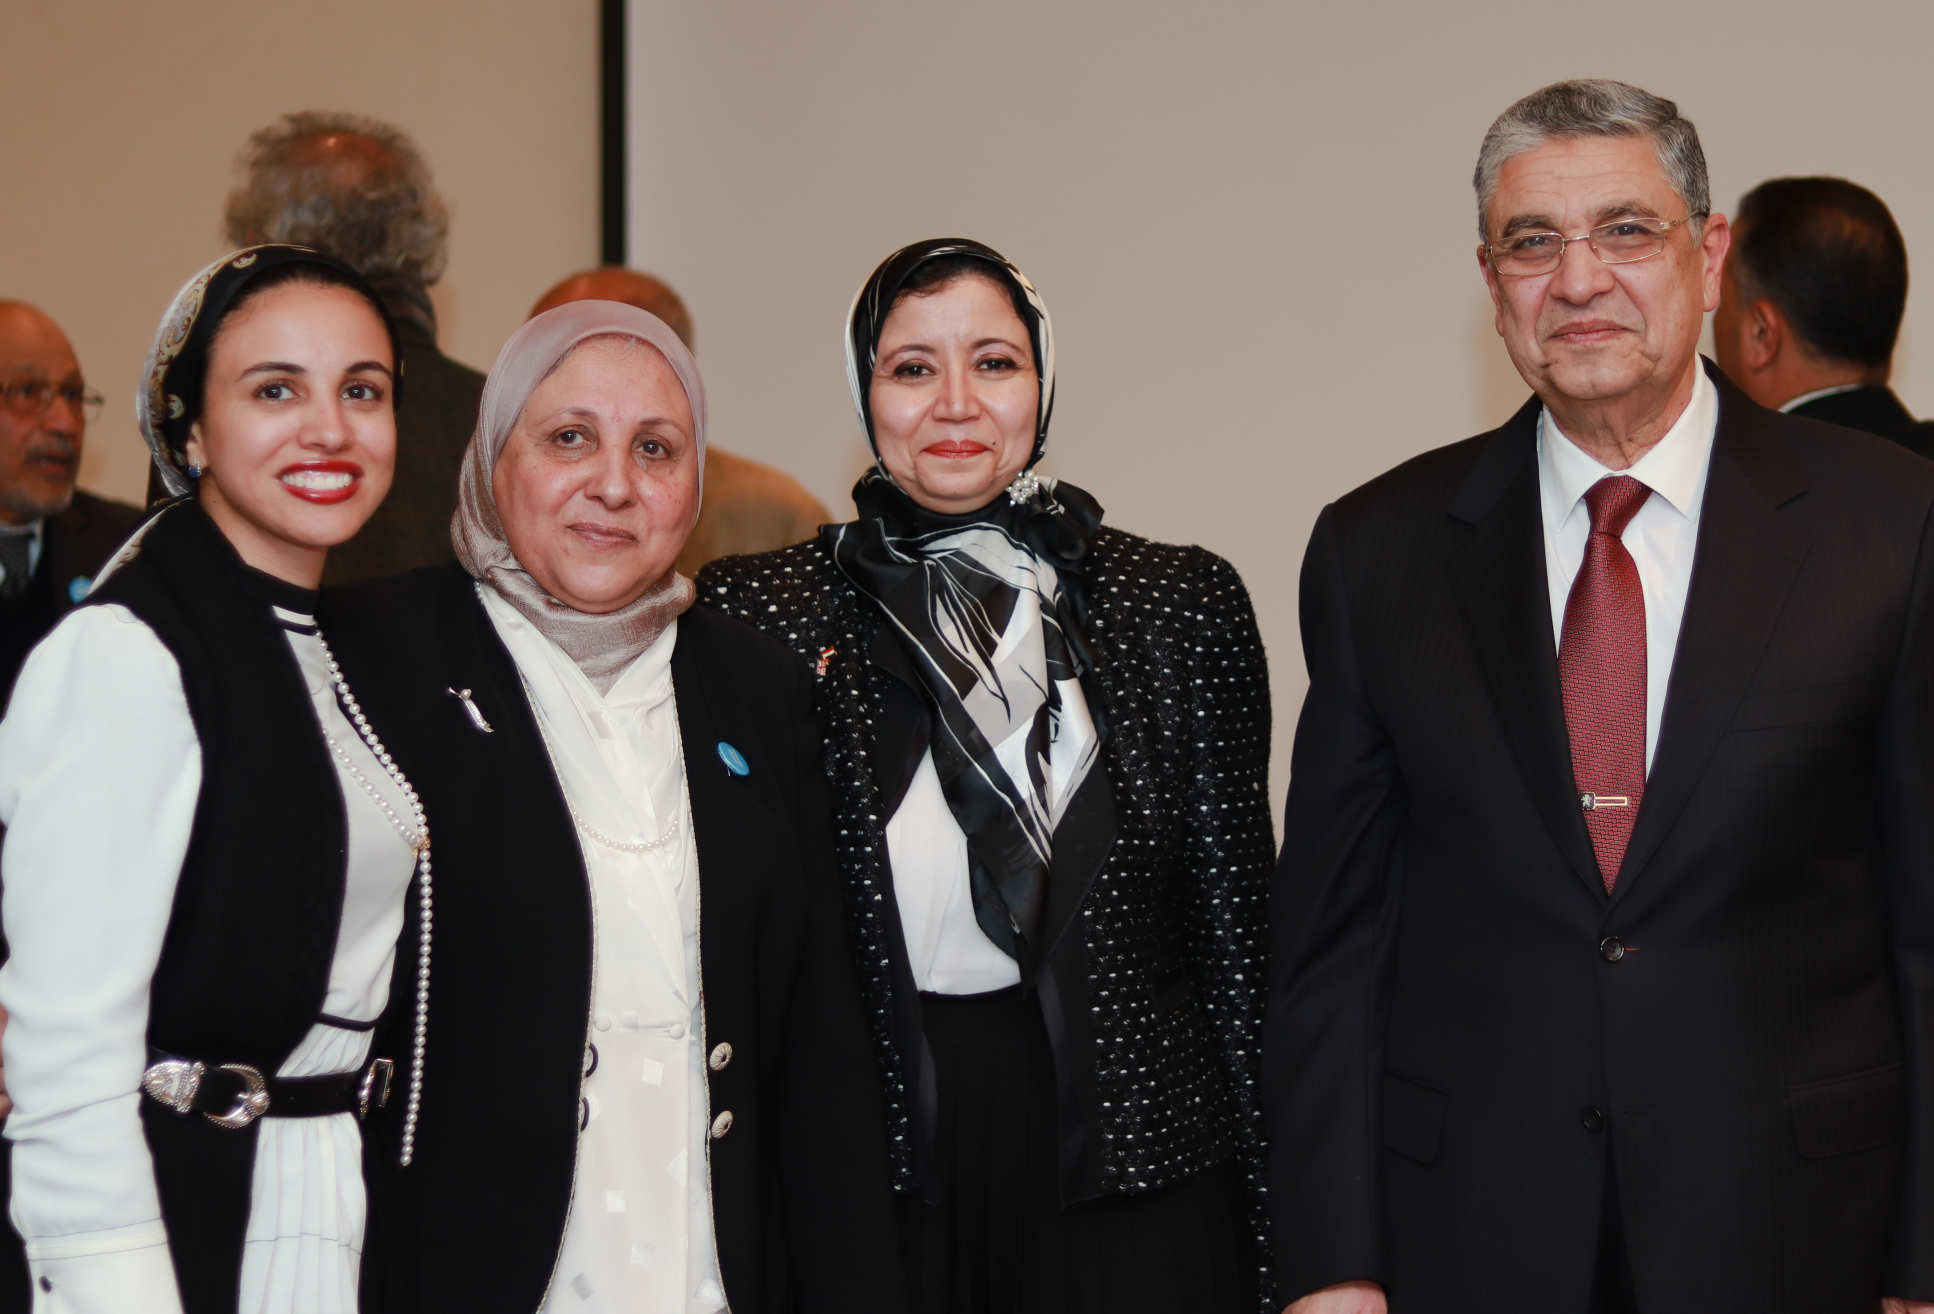 Egyptian Minister Dr Mohamed Shaker El Markabi met with Dr El-Bahrawy and fellow alumni